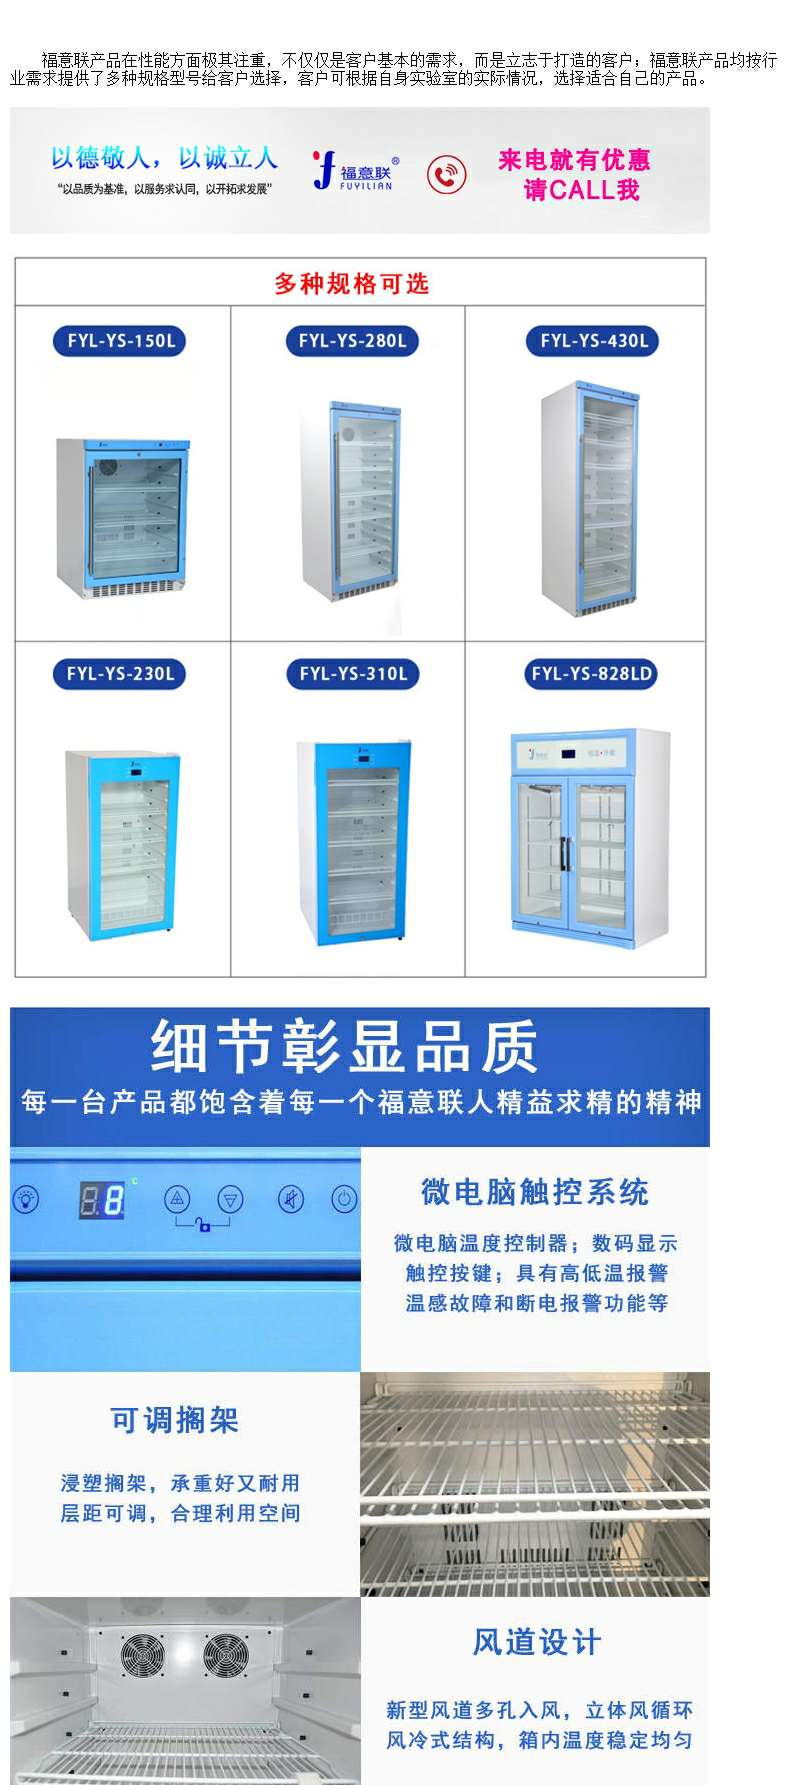 保温柜产品结构为立式箱体。主体分为四部分：电气控制系统，制冷系统、制热系统、显示系统。